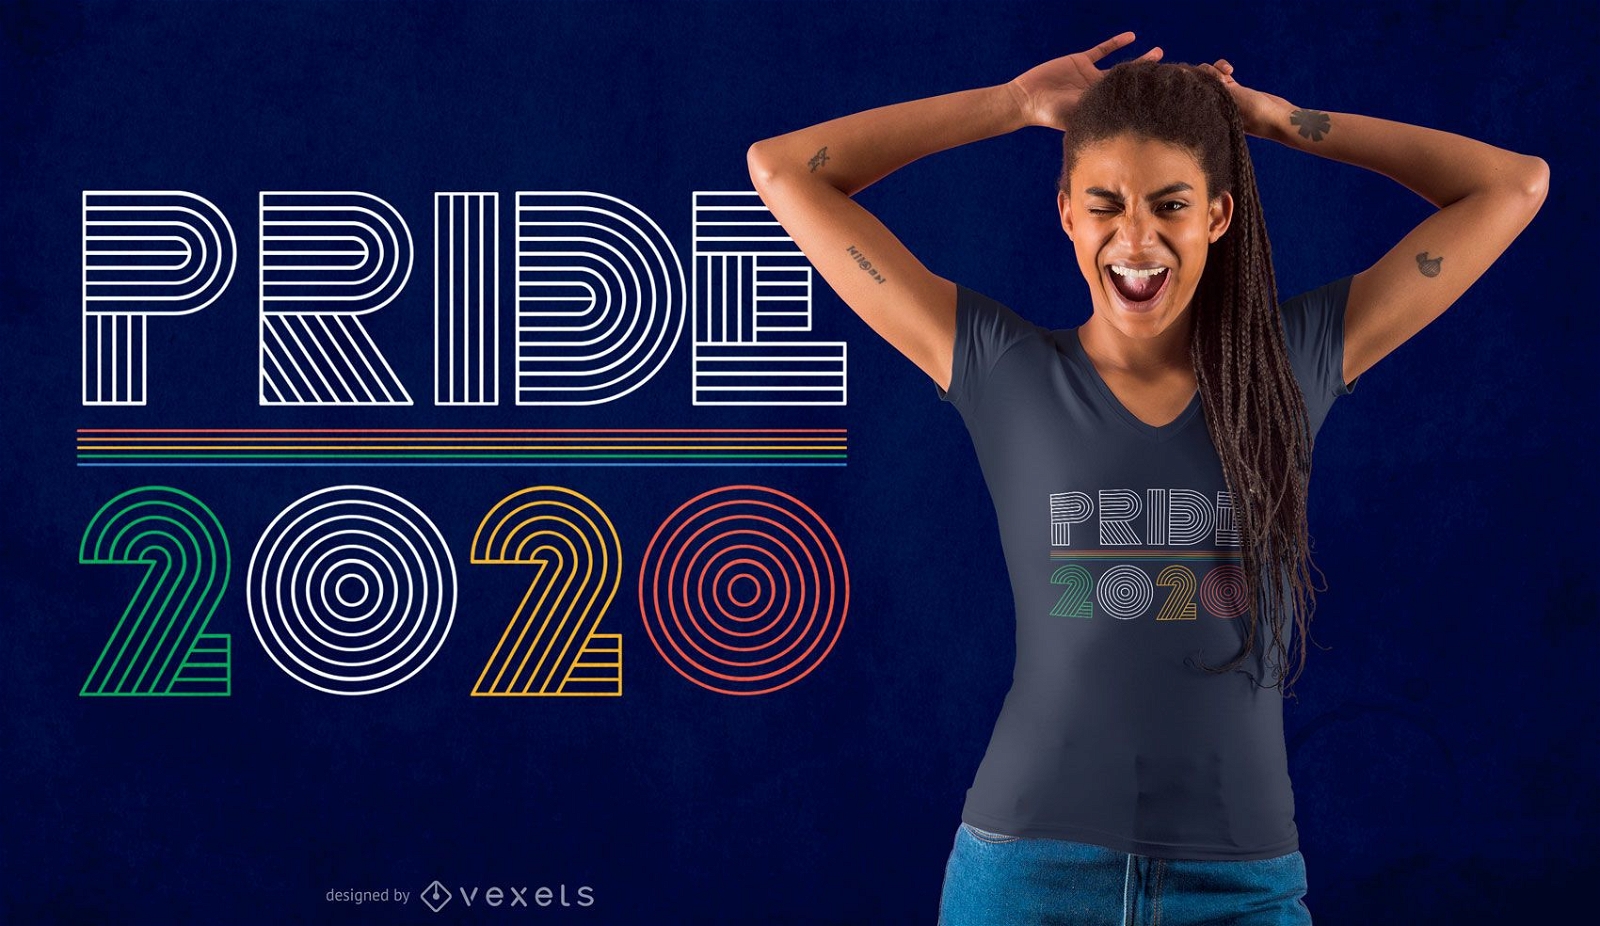 Design de camisetas da Pride 2020